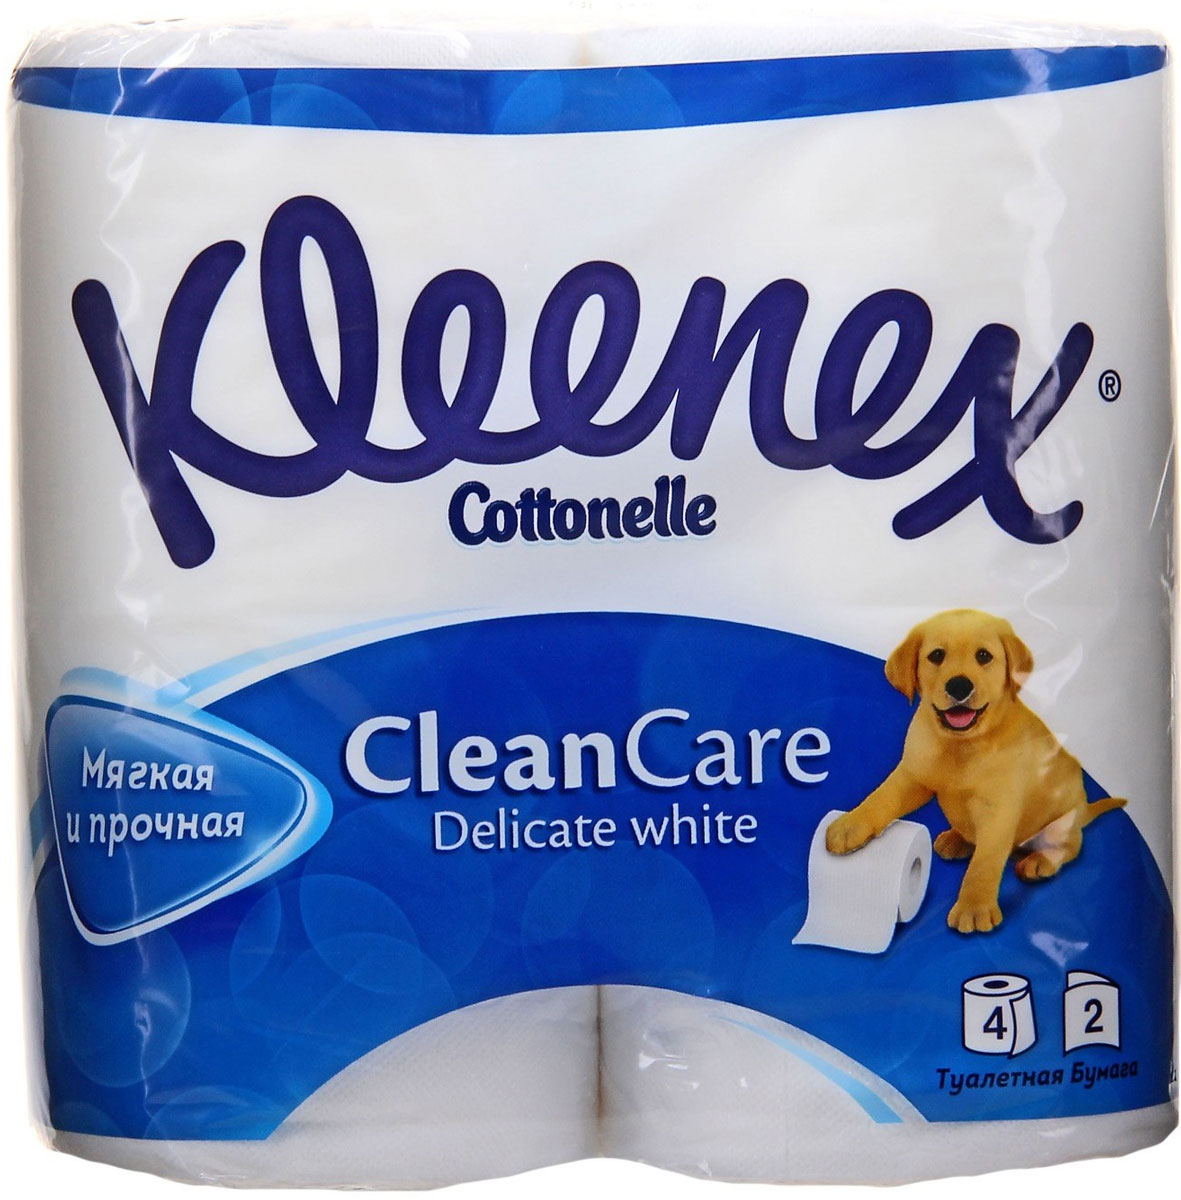 Туалетная бумага Kleenex 